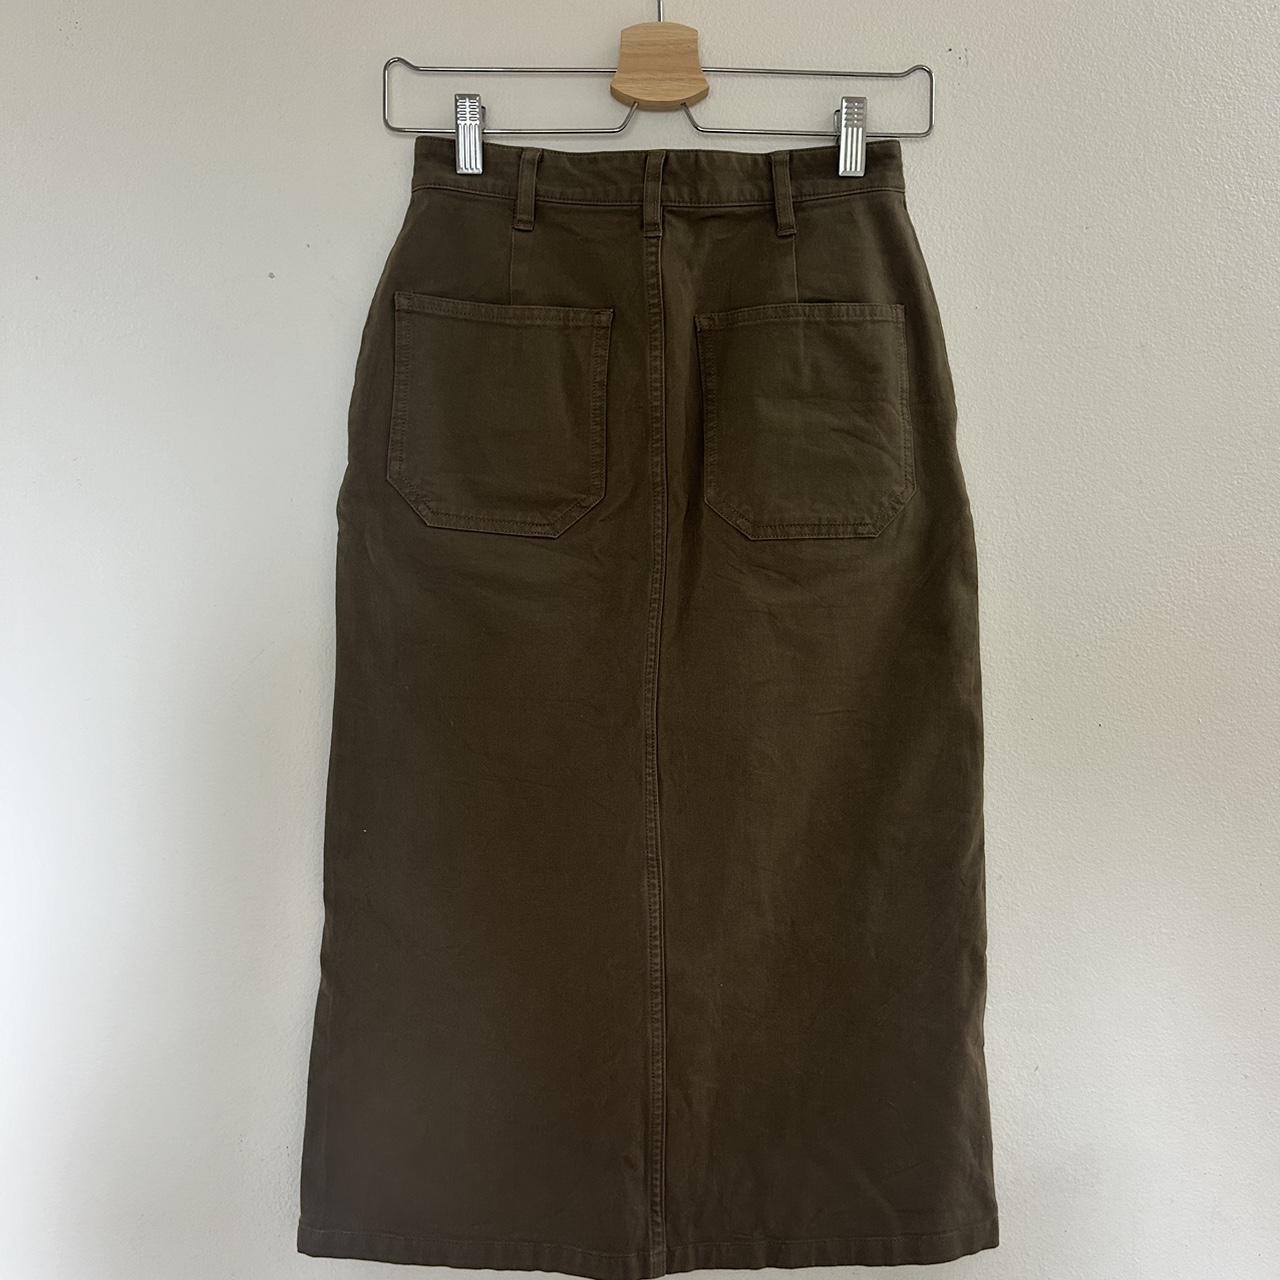 #Muji brown/taupe/khaki midi skirt Mid calf length... - Depop